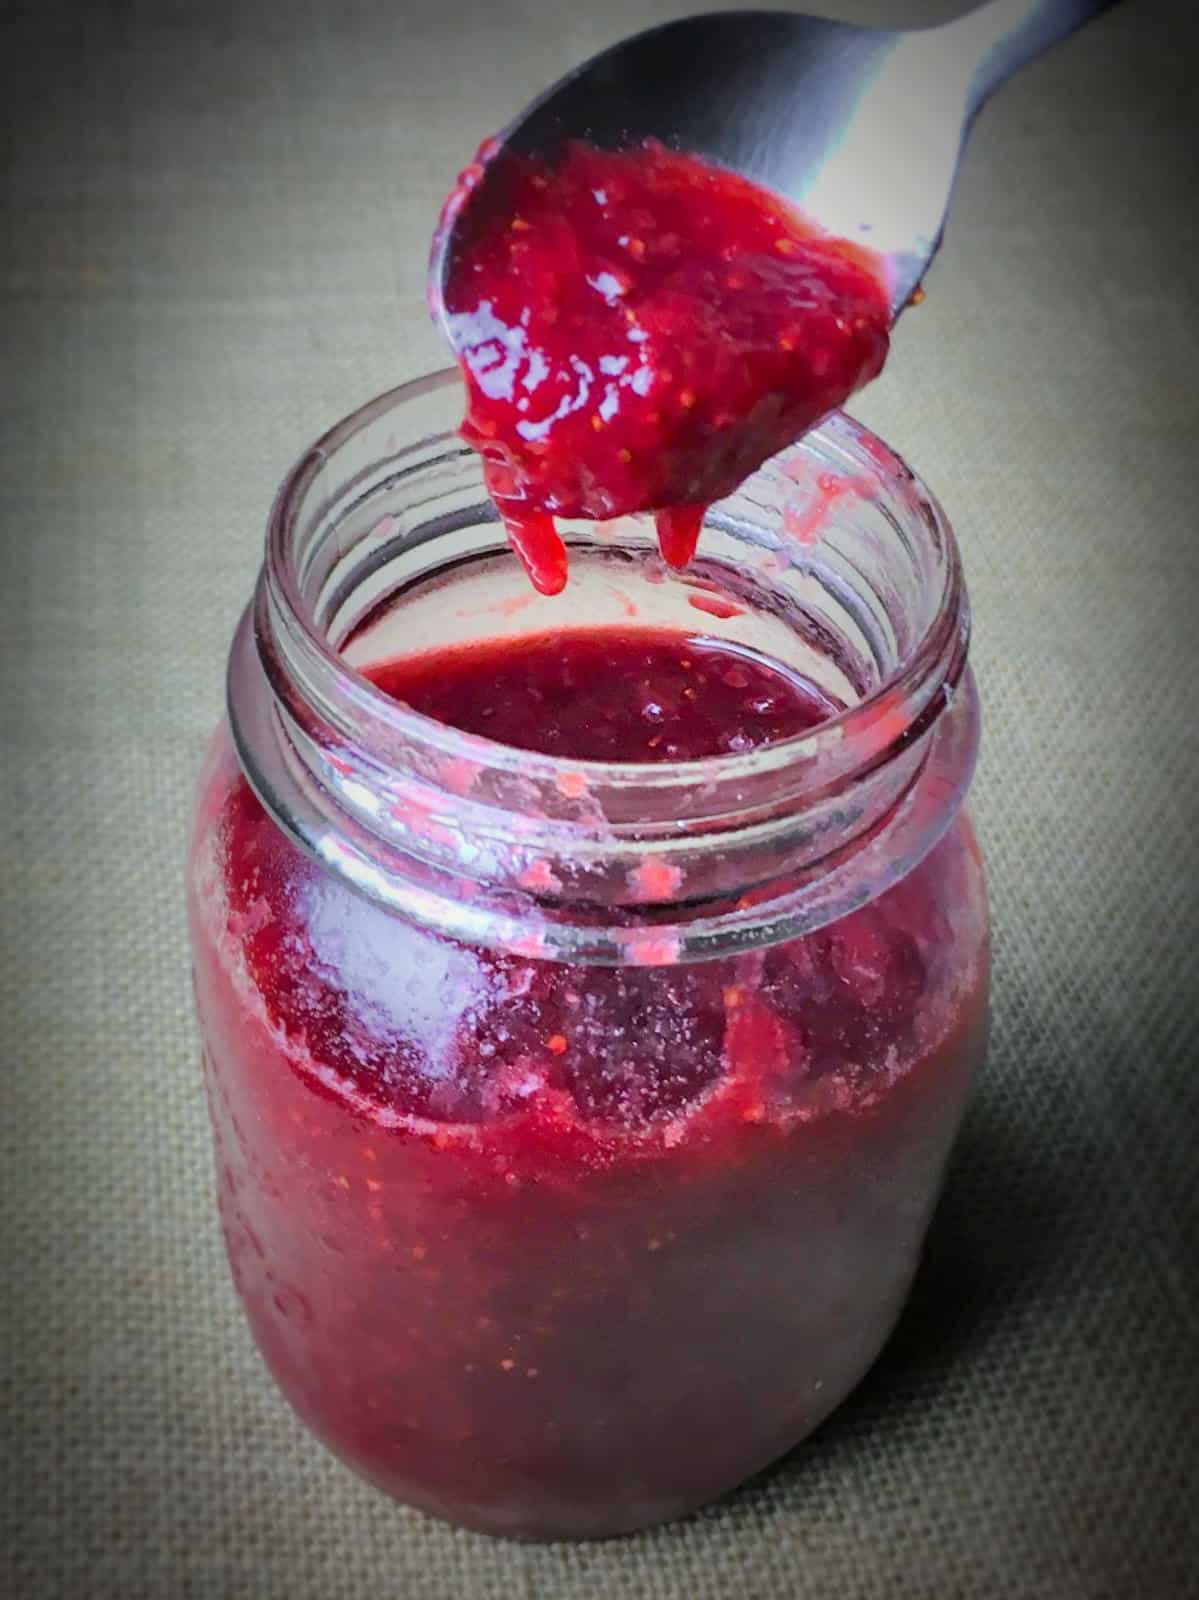 Strawberry jam without pectin.